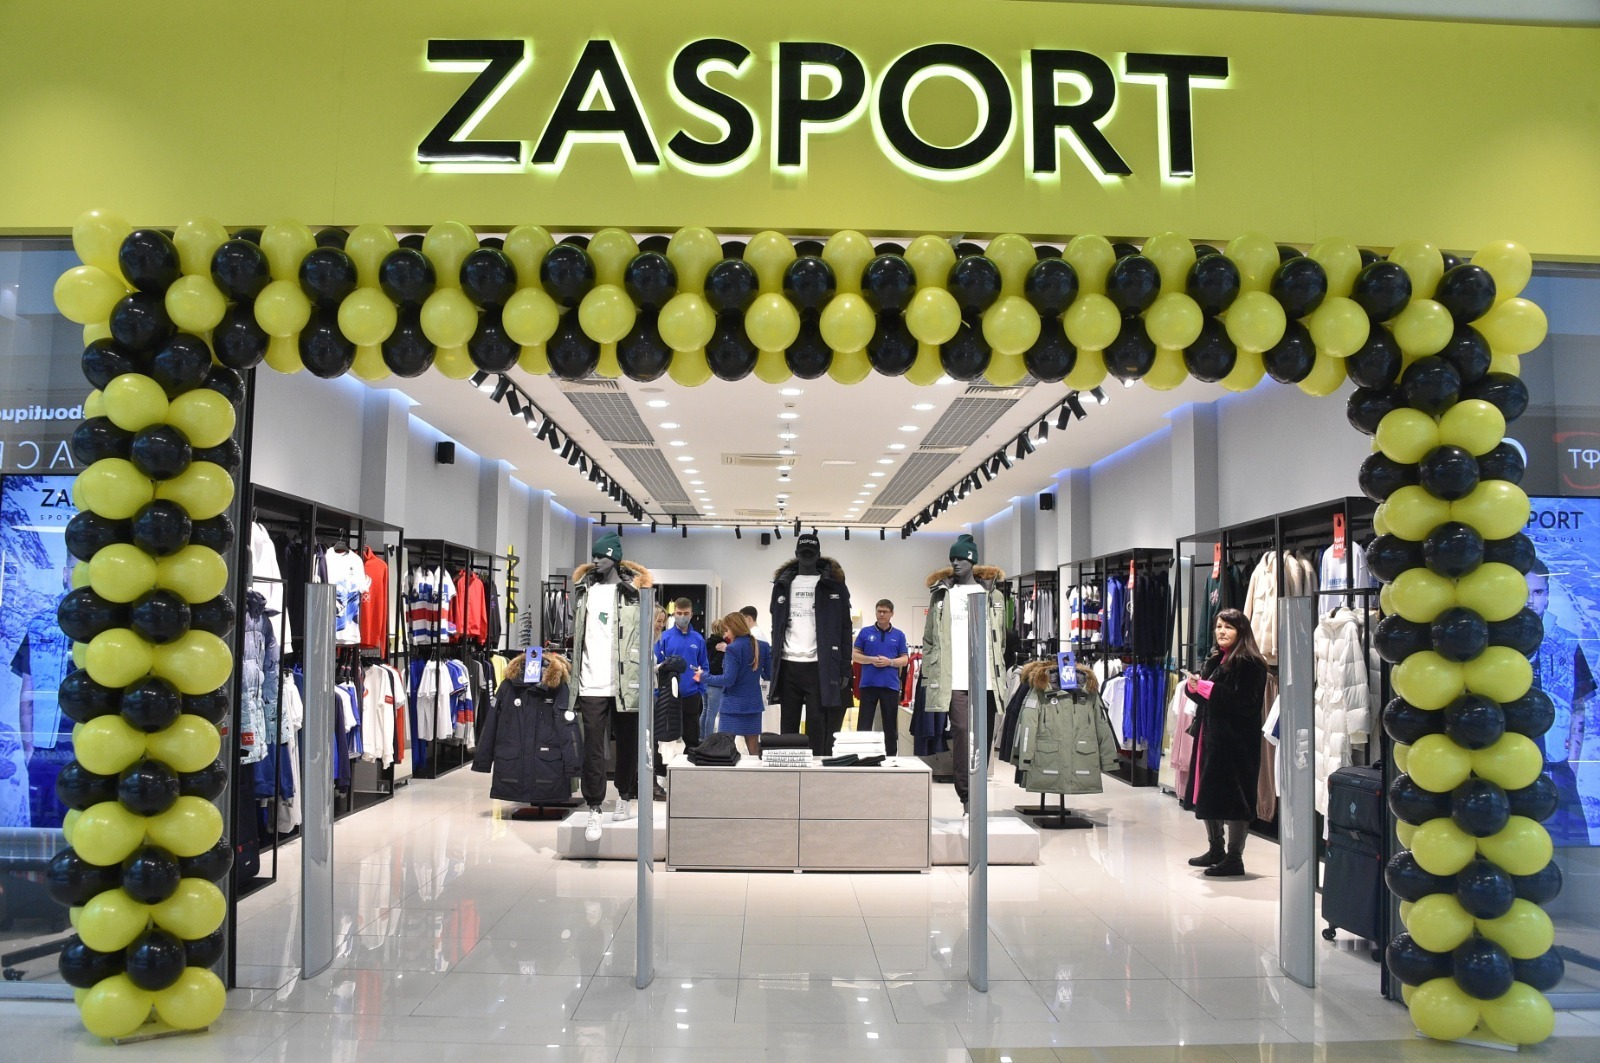 В Уфе открыли спортивный магазин «Zasport»